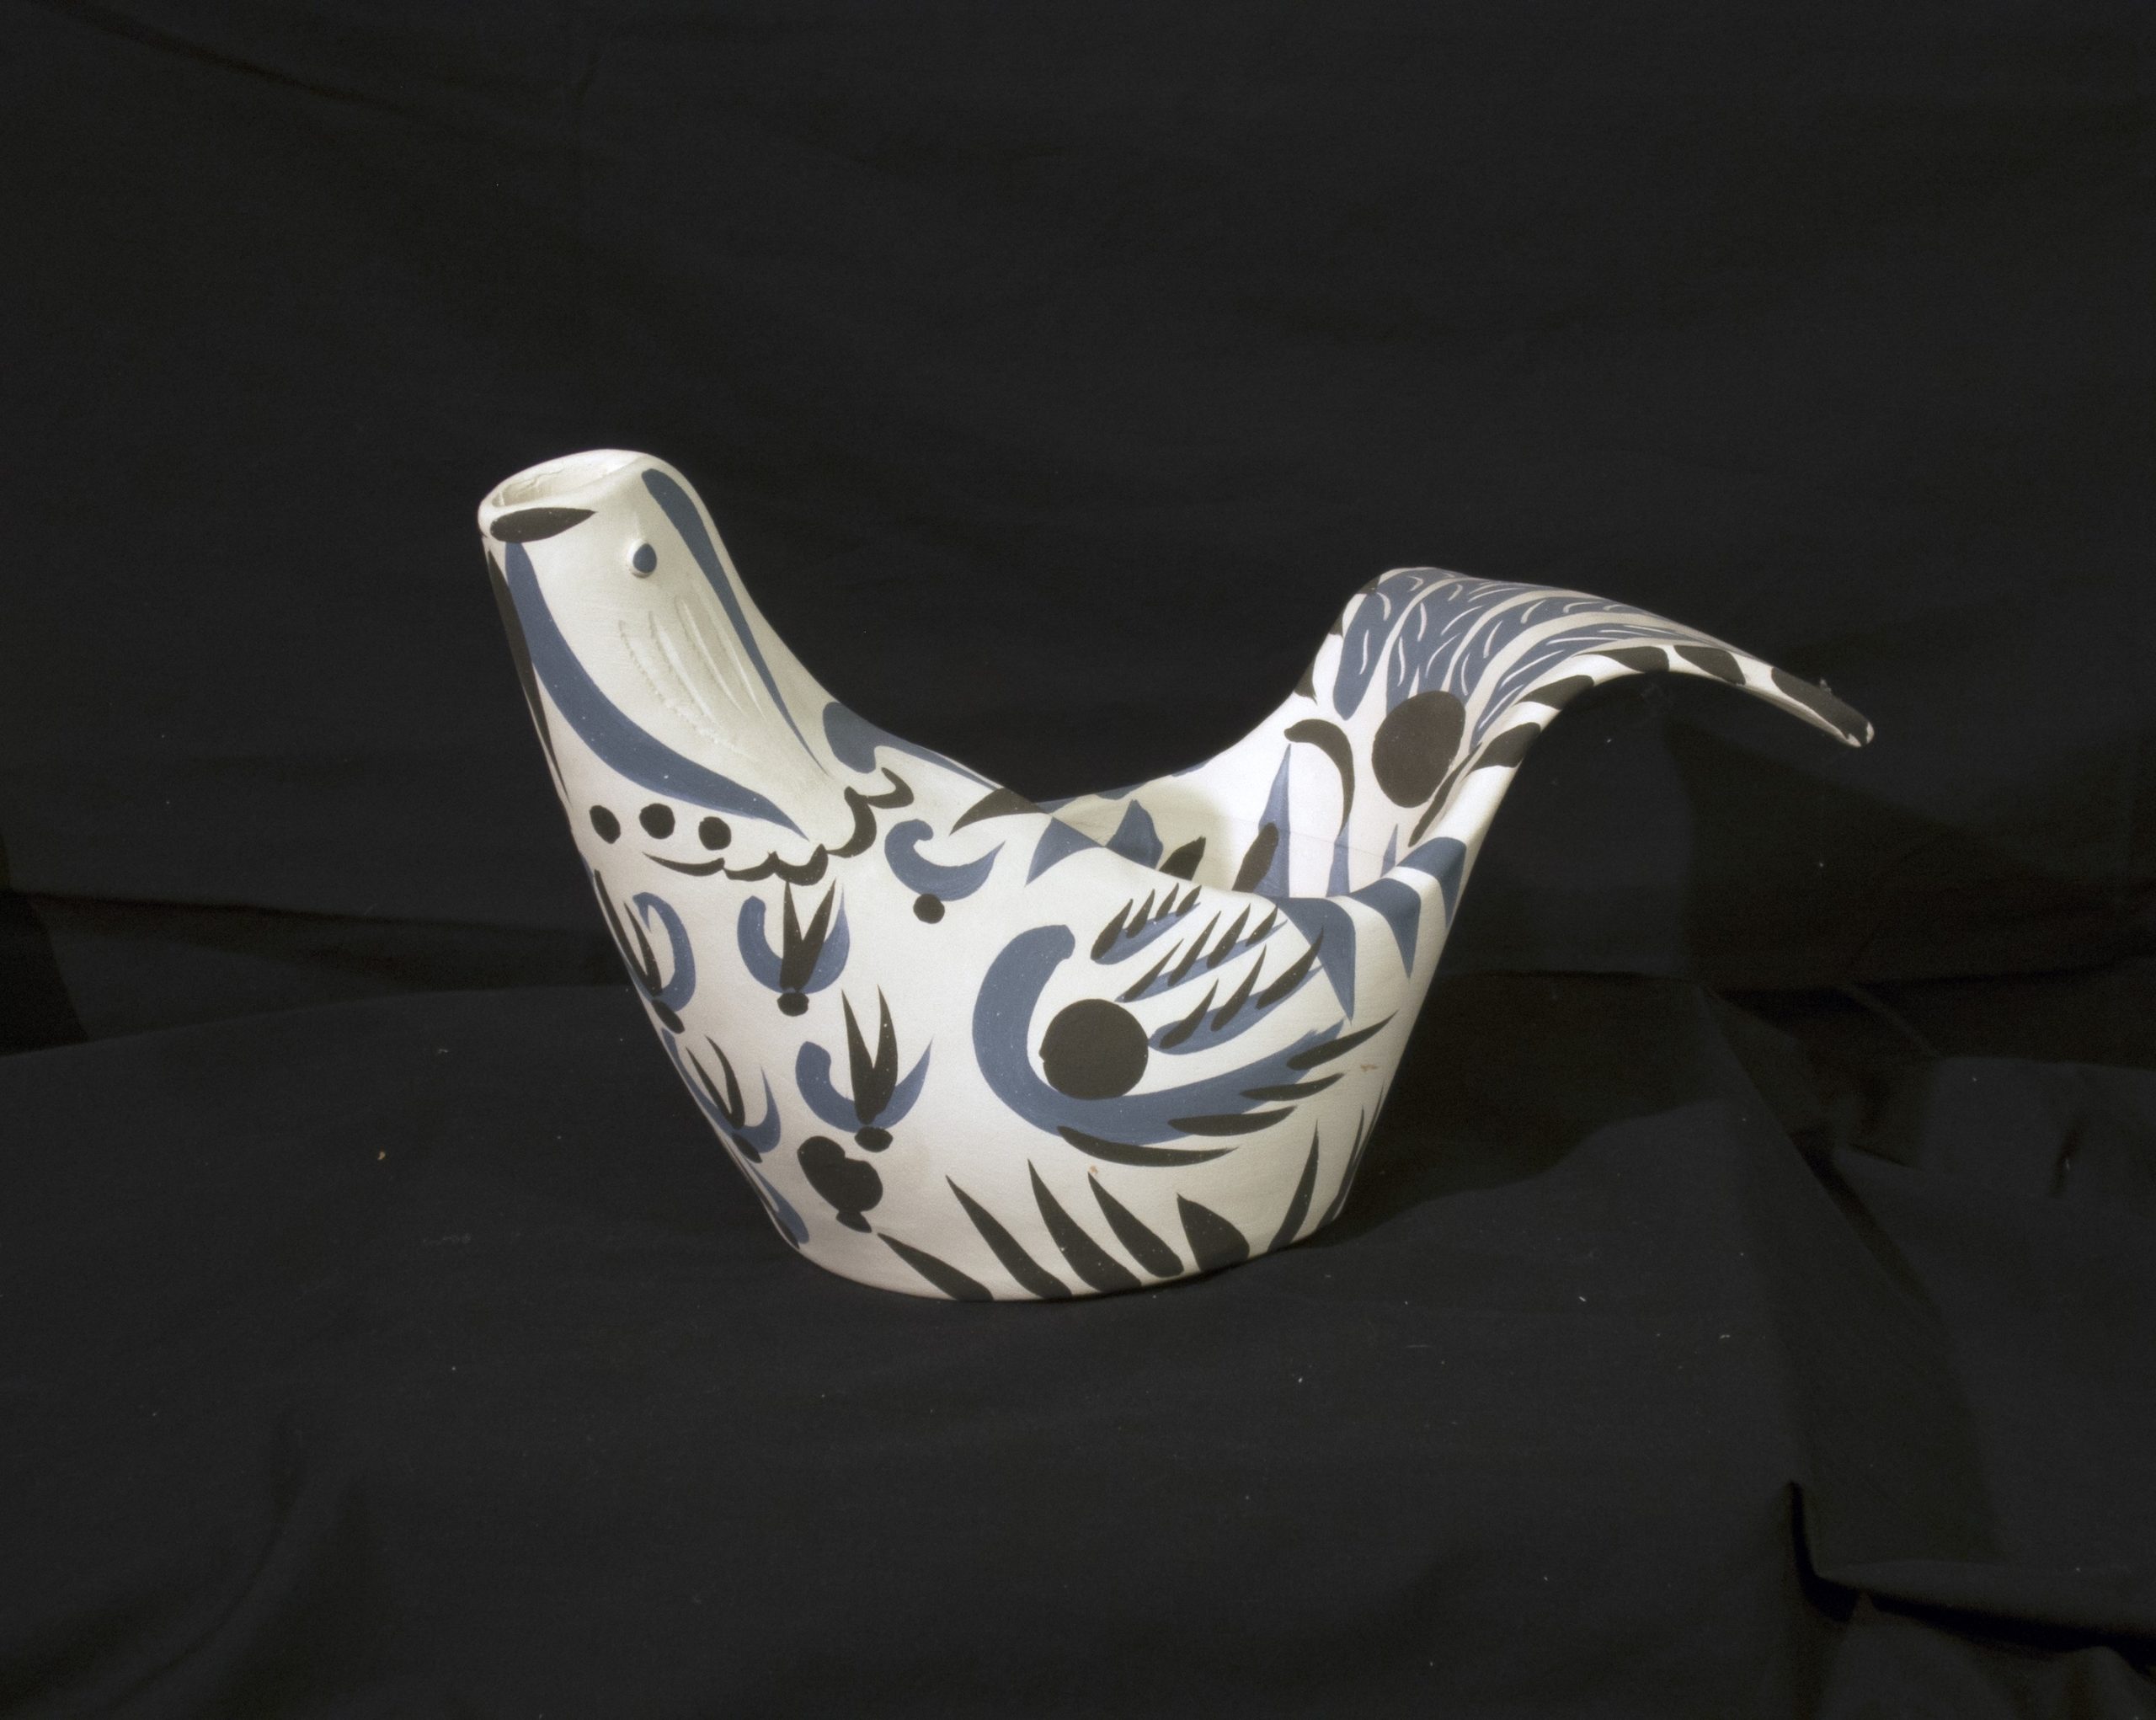 A ceramic sculpture of a dove